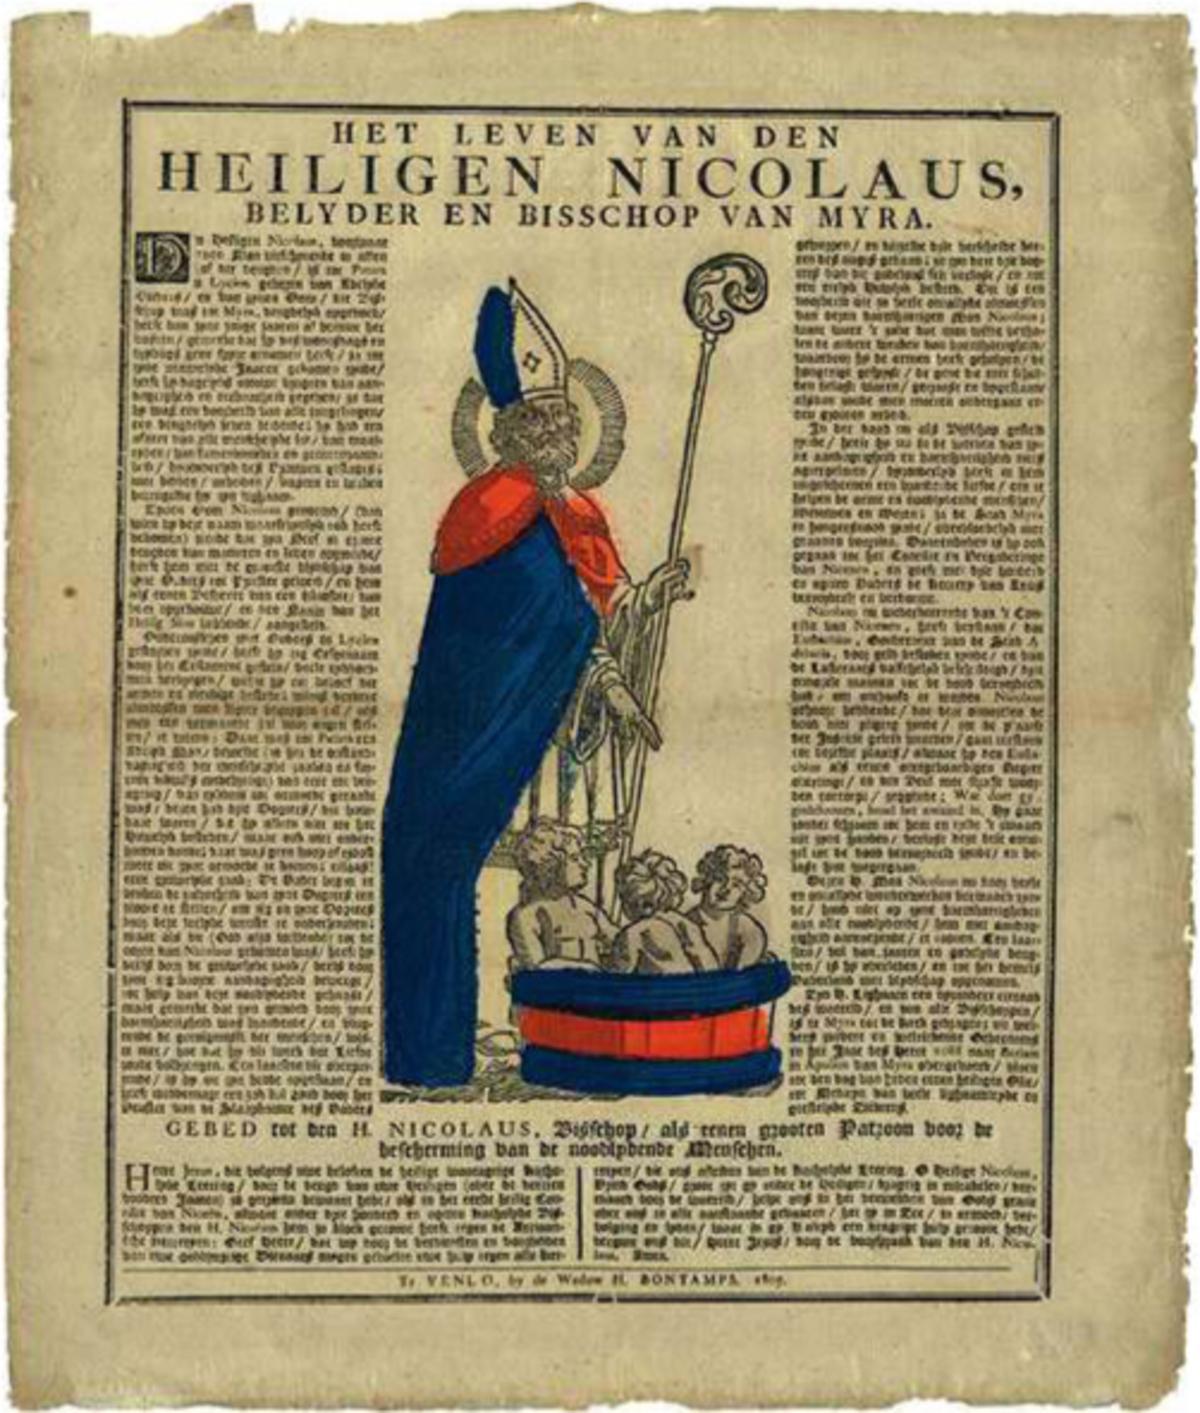 De heilige Nicolaas van Myra, met krullend haar, dito baard en de bisschoppelijke kromstaf. Aan zijn voeten de door hem geredde kindekens. (Limburg Museum)